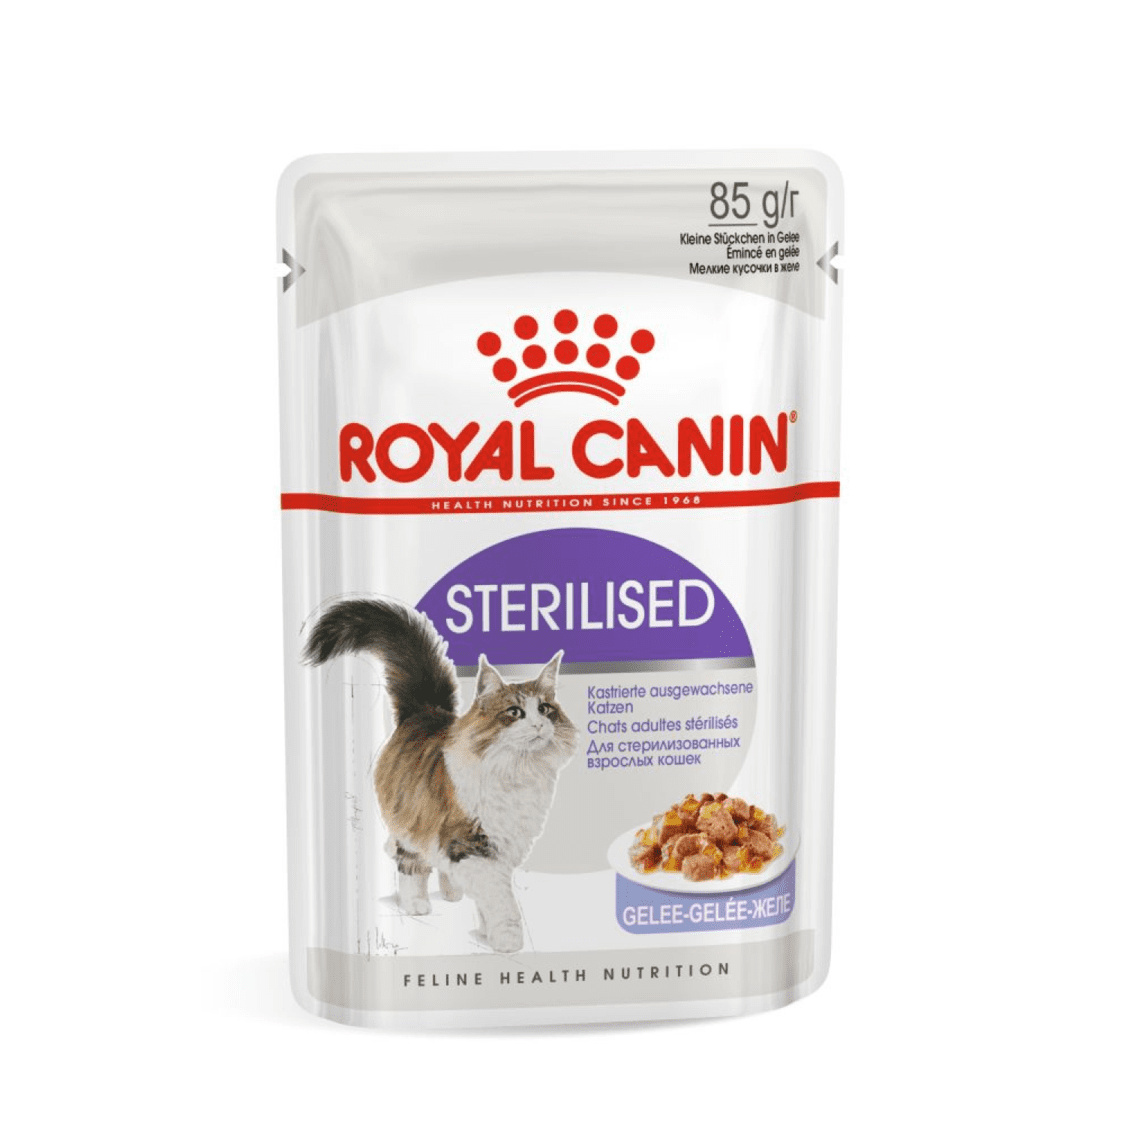 Royal Canin паучи Royal Canin паучи кусочки в желе для кастрированных кошек 1-7лет (28 шт.)